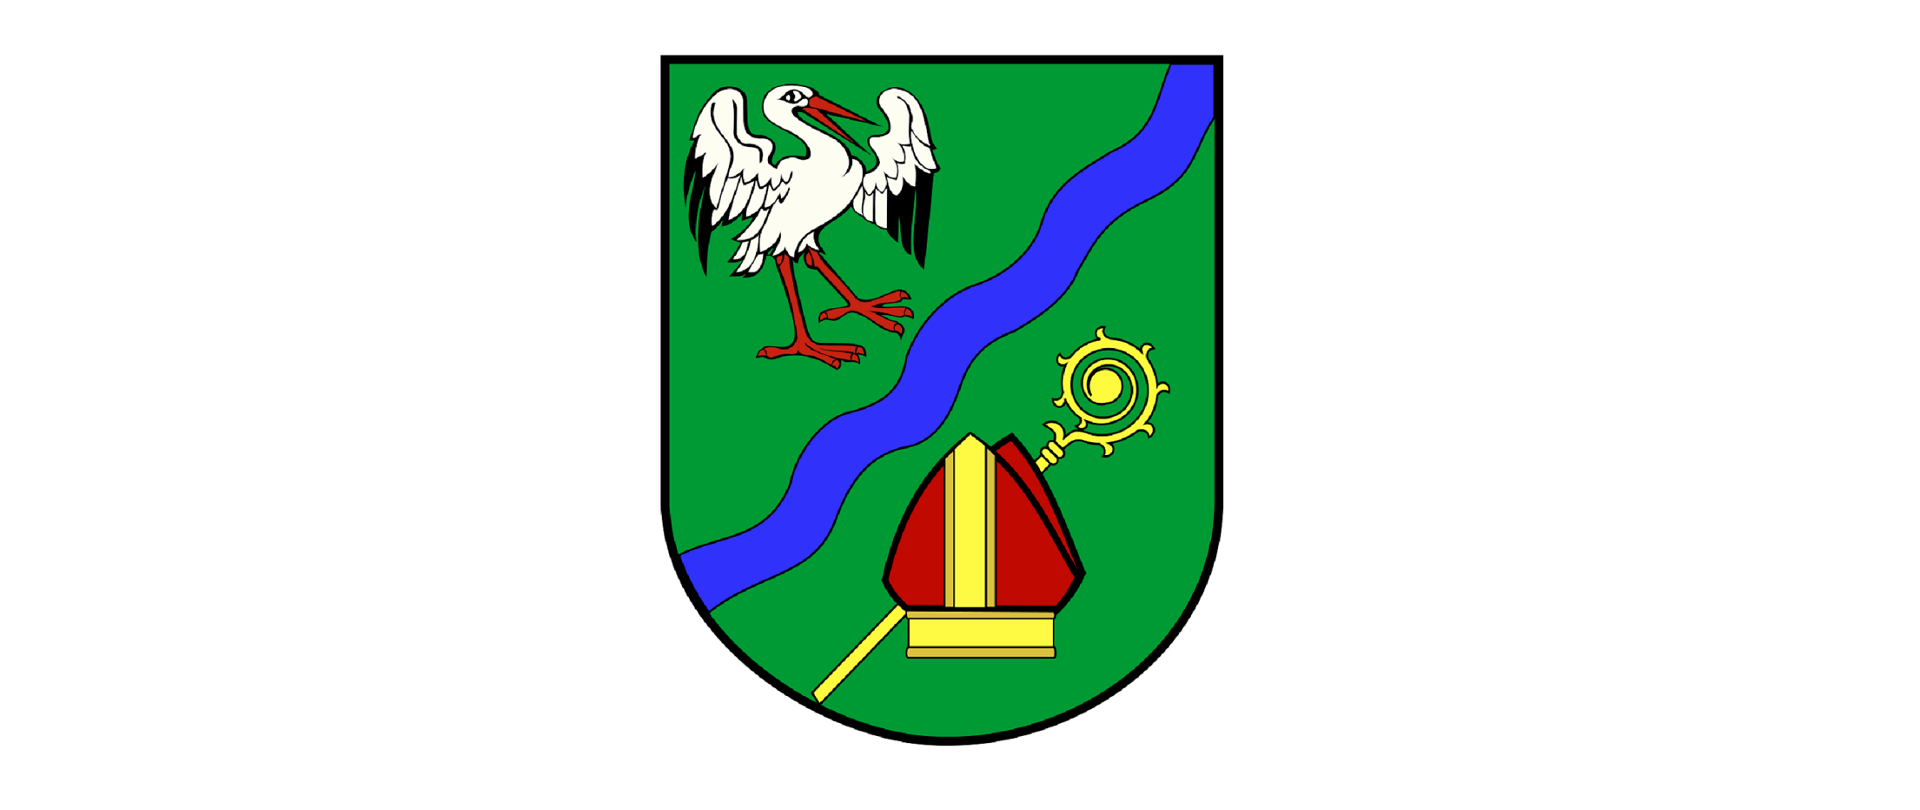 Na zdjęciu widnieje herb gminy Brańszczyk. Herb ma kształt tarczy zaokrąglonej u dołu. Na zielonym tle widnieje bocian, przecinająca herb na pół rzeka oraz insygnia biskupie.